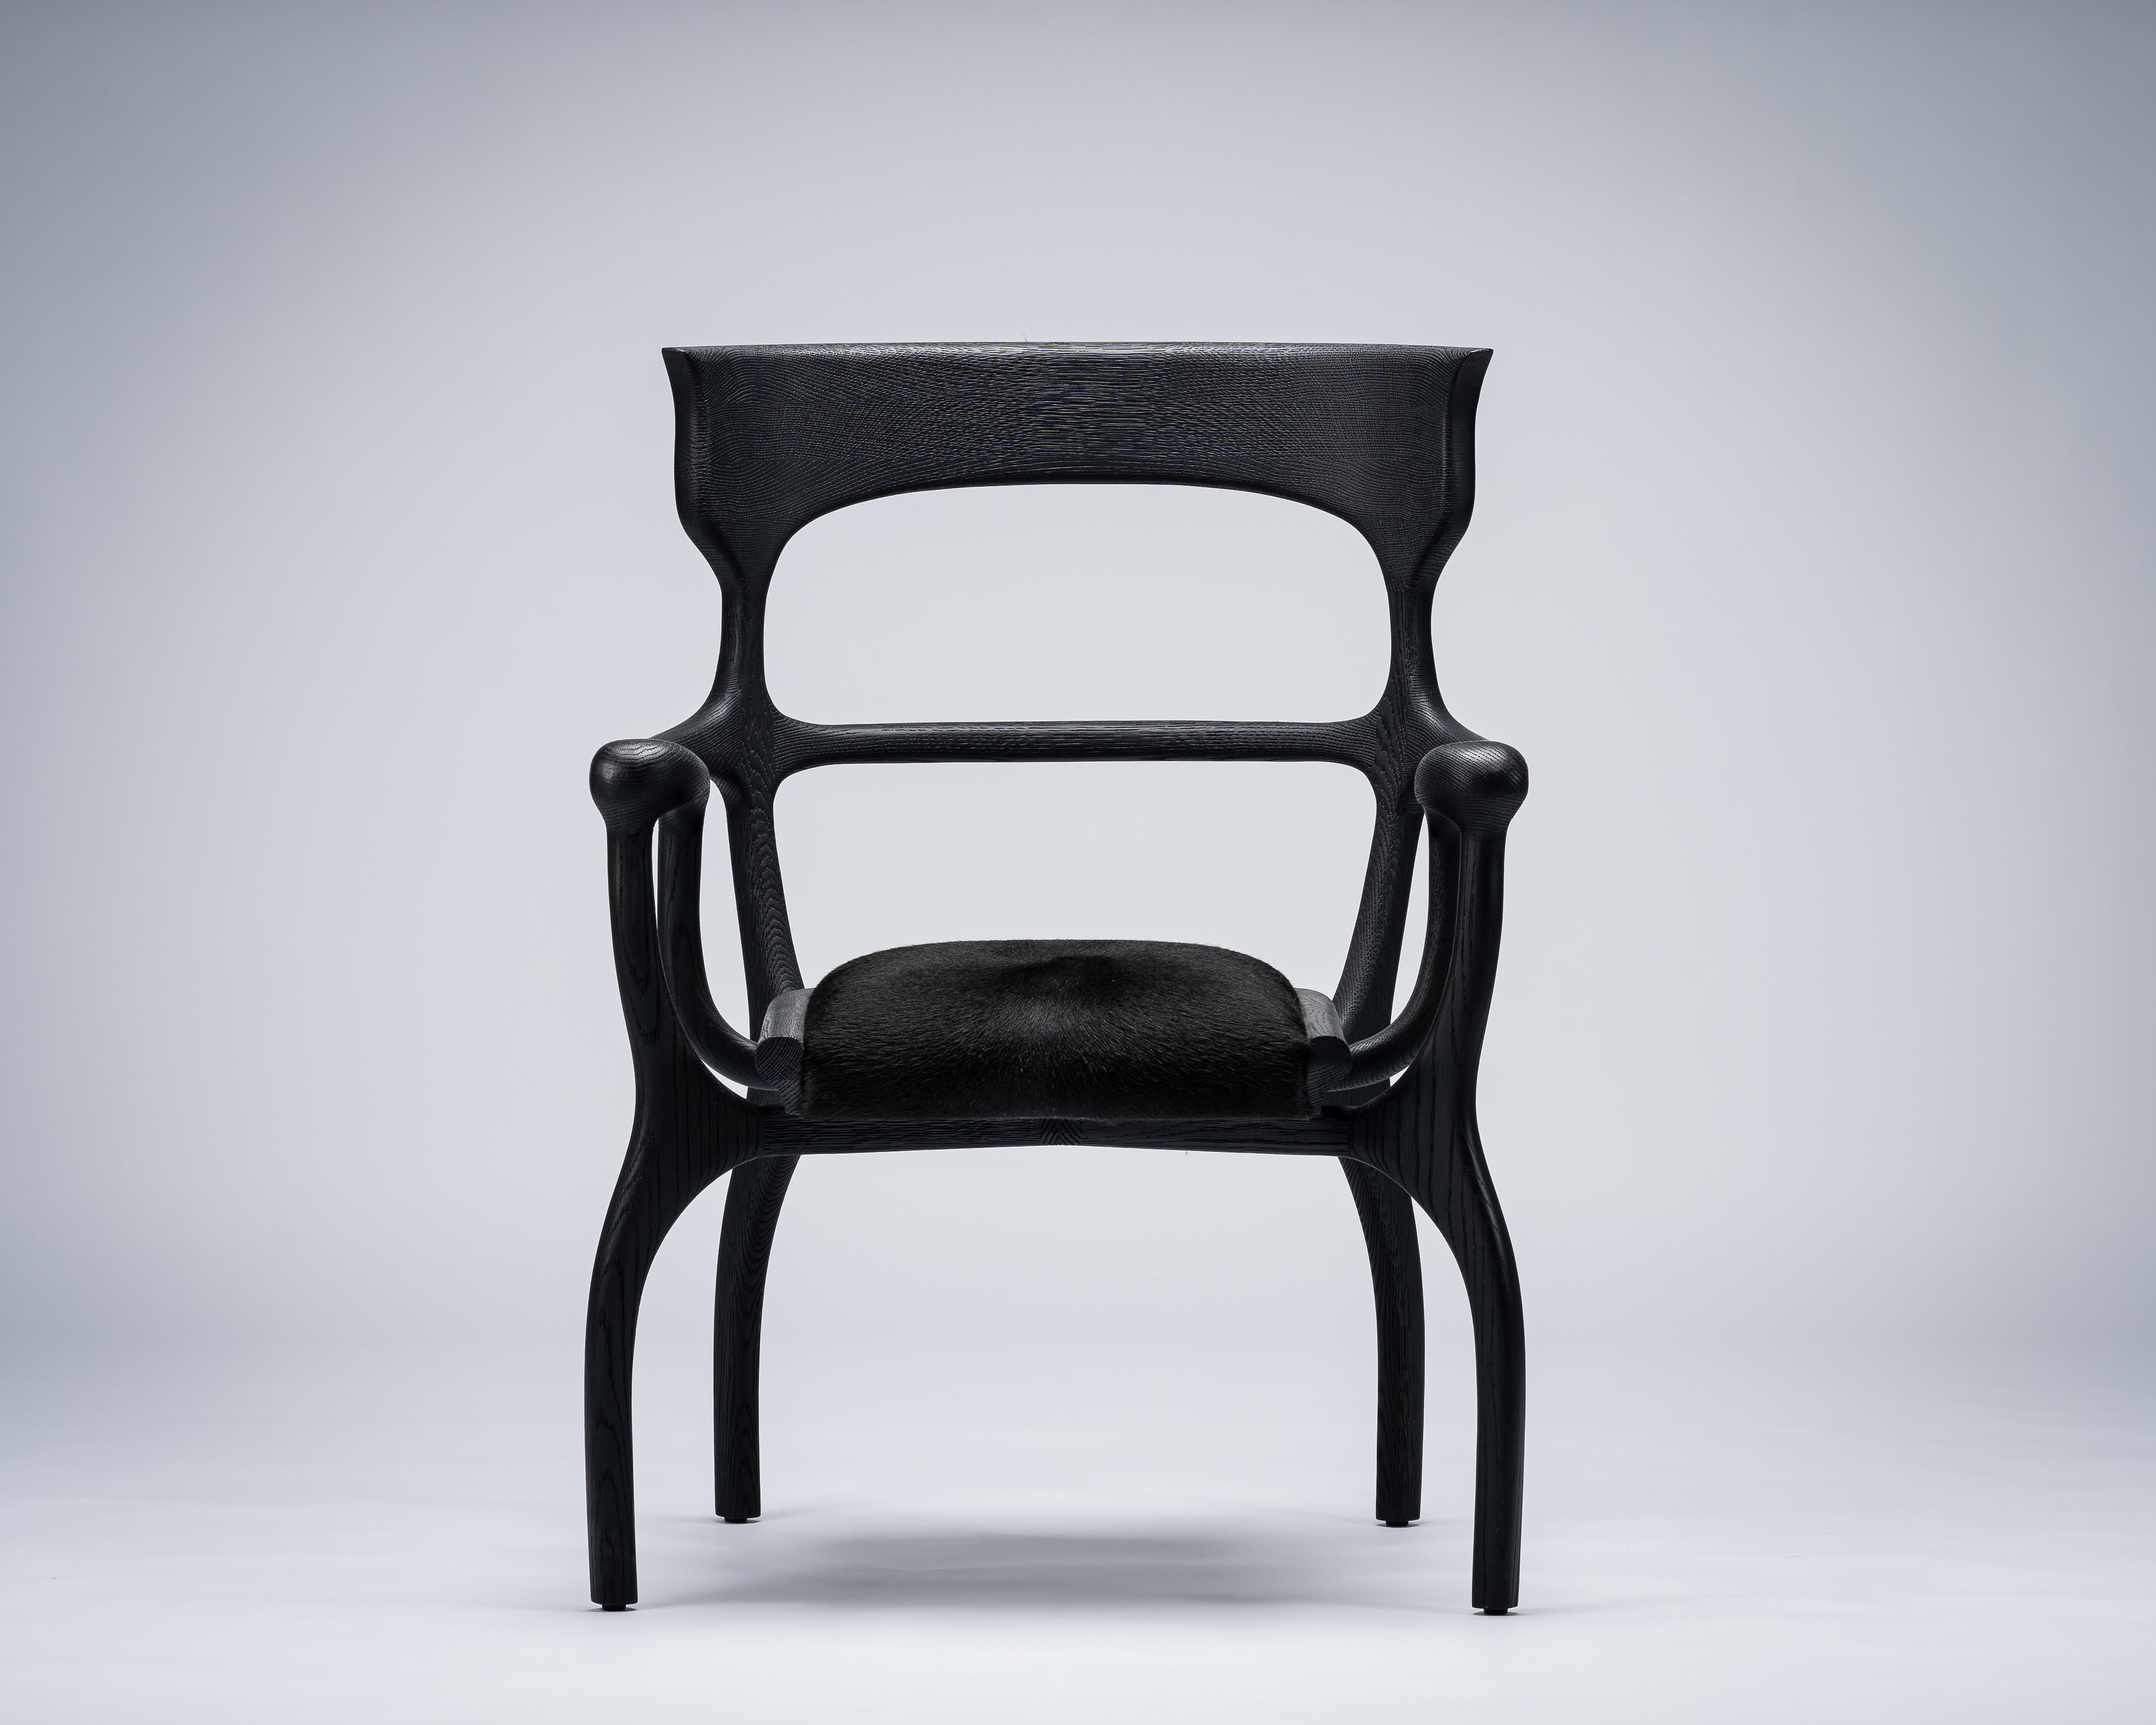 Fauteuil MARTA de Mandy Graham 

MARTA
M01, chaise fauteuil
Noyer américain / chêne blanc sablé, siège en peau de vache velue
Mesures : 27